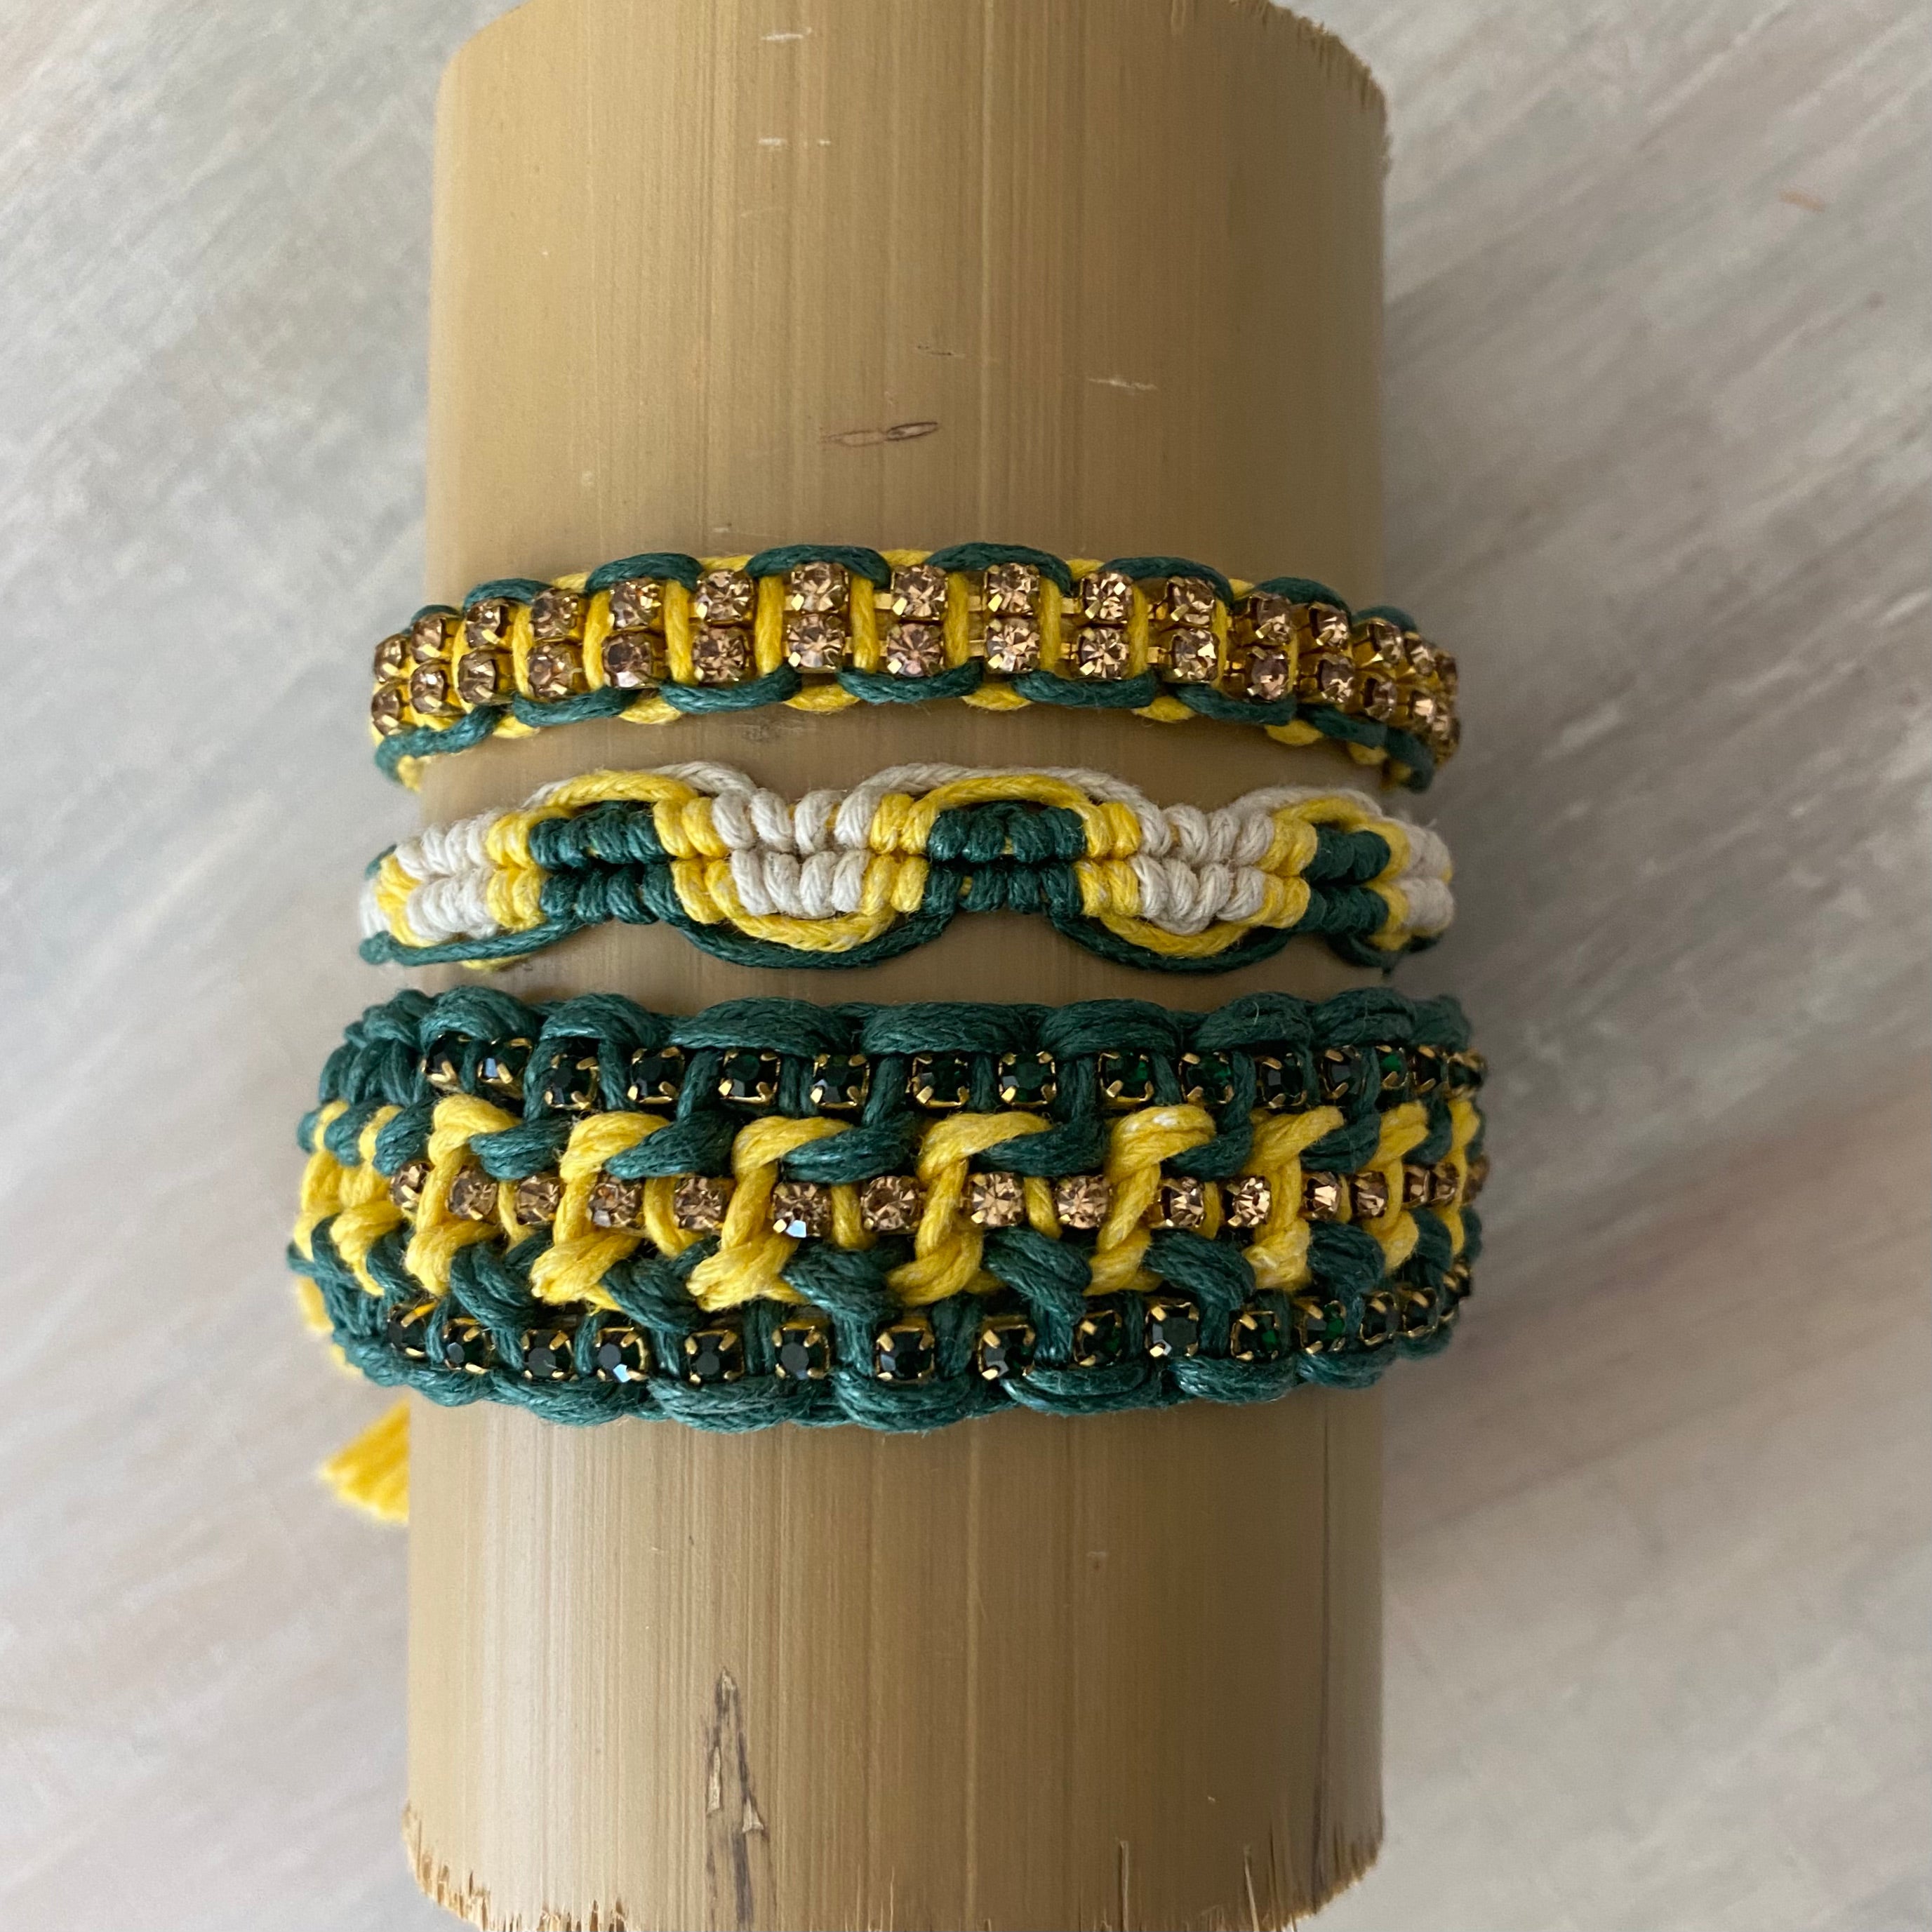 Game Day: Emerald/Teal green & Athletic Gold- Macrame String Bracelet Set